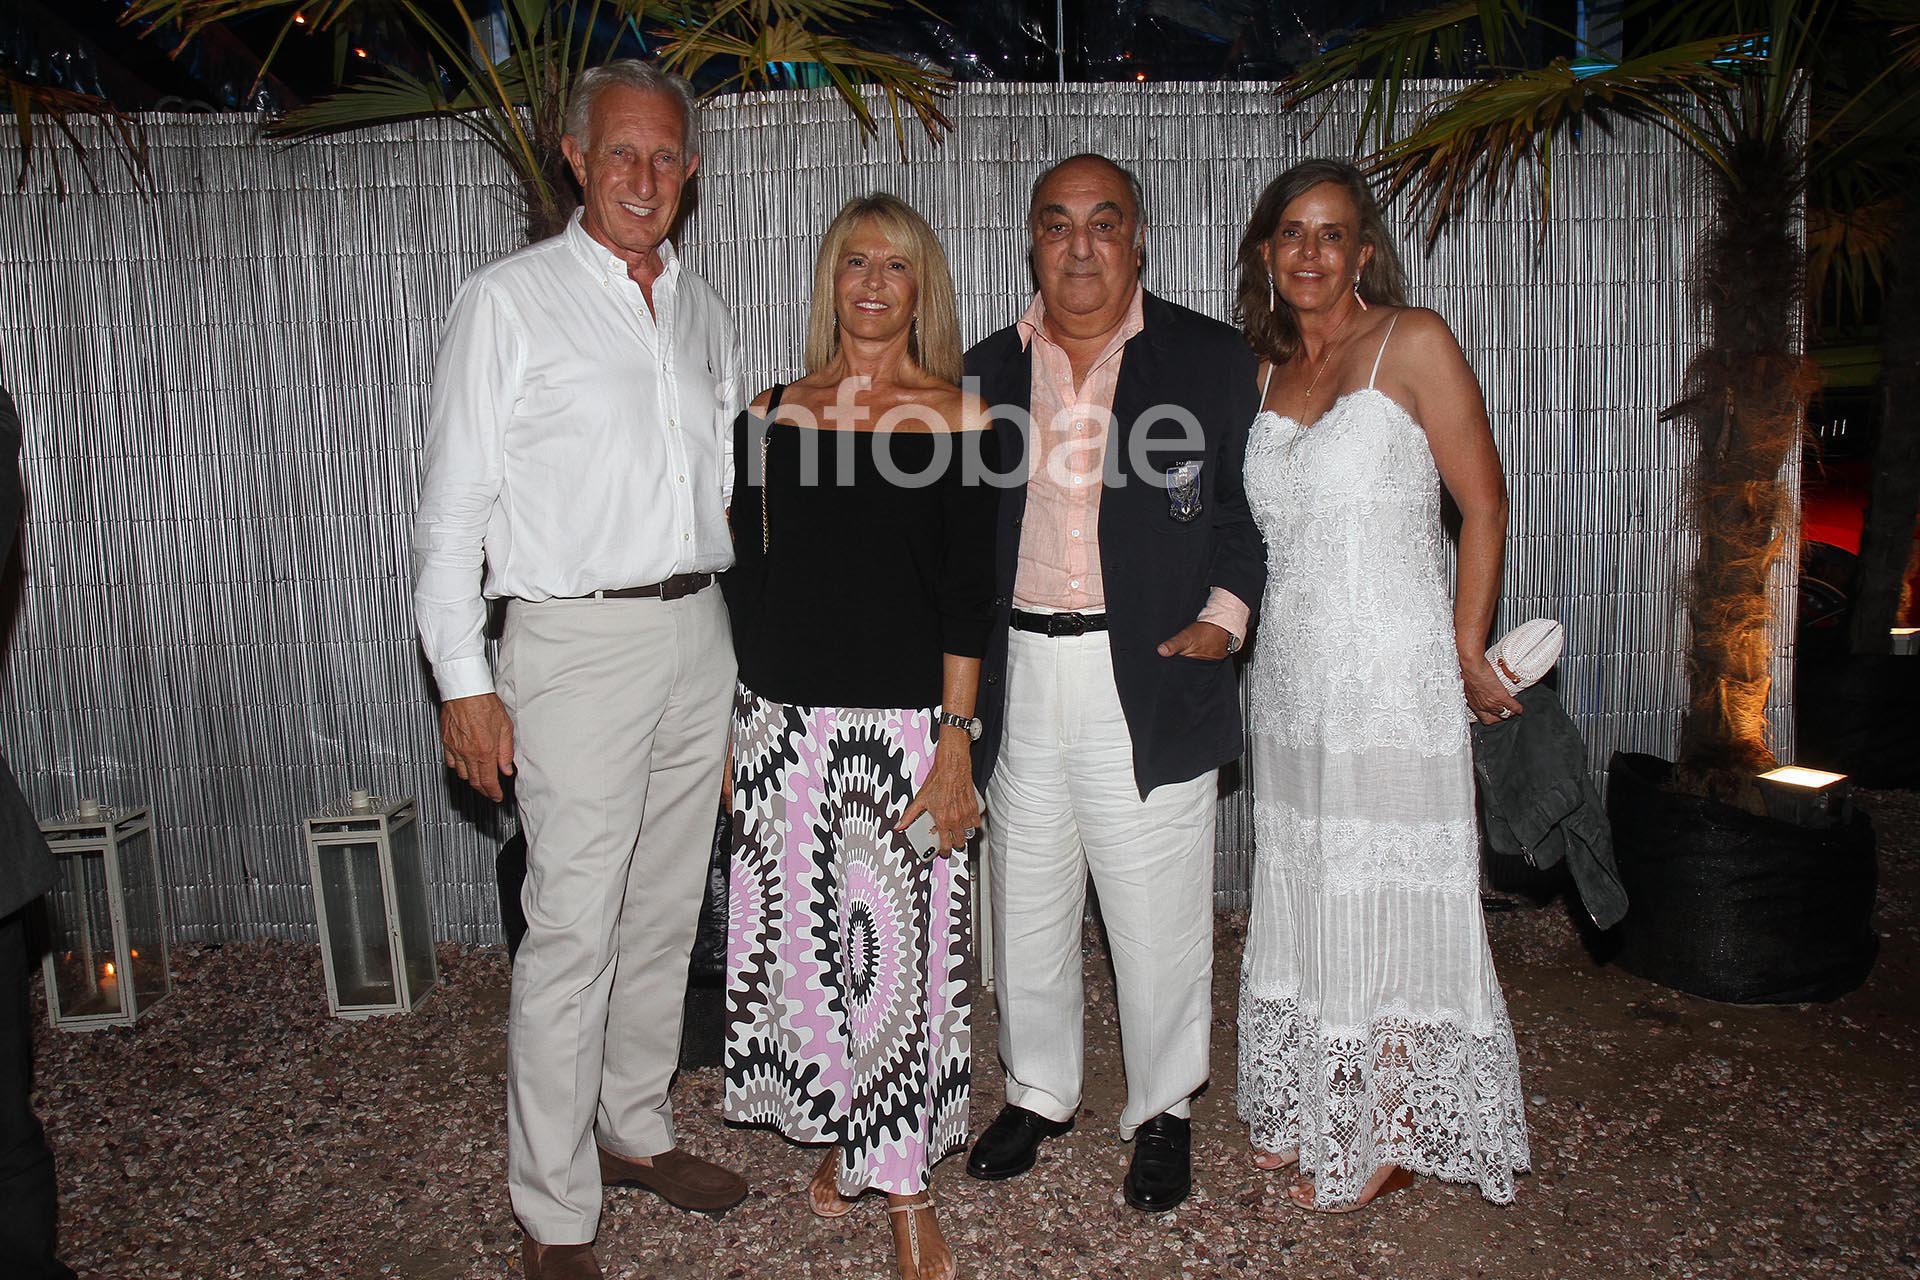 El matrimonio en la fiesta 2019 de Fiat, en Punta del Este, junto a Jorge Aufiero y Mónica Balestrini de Aufiero